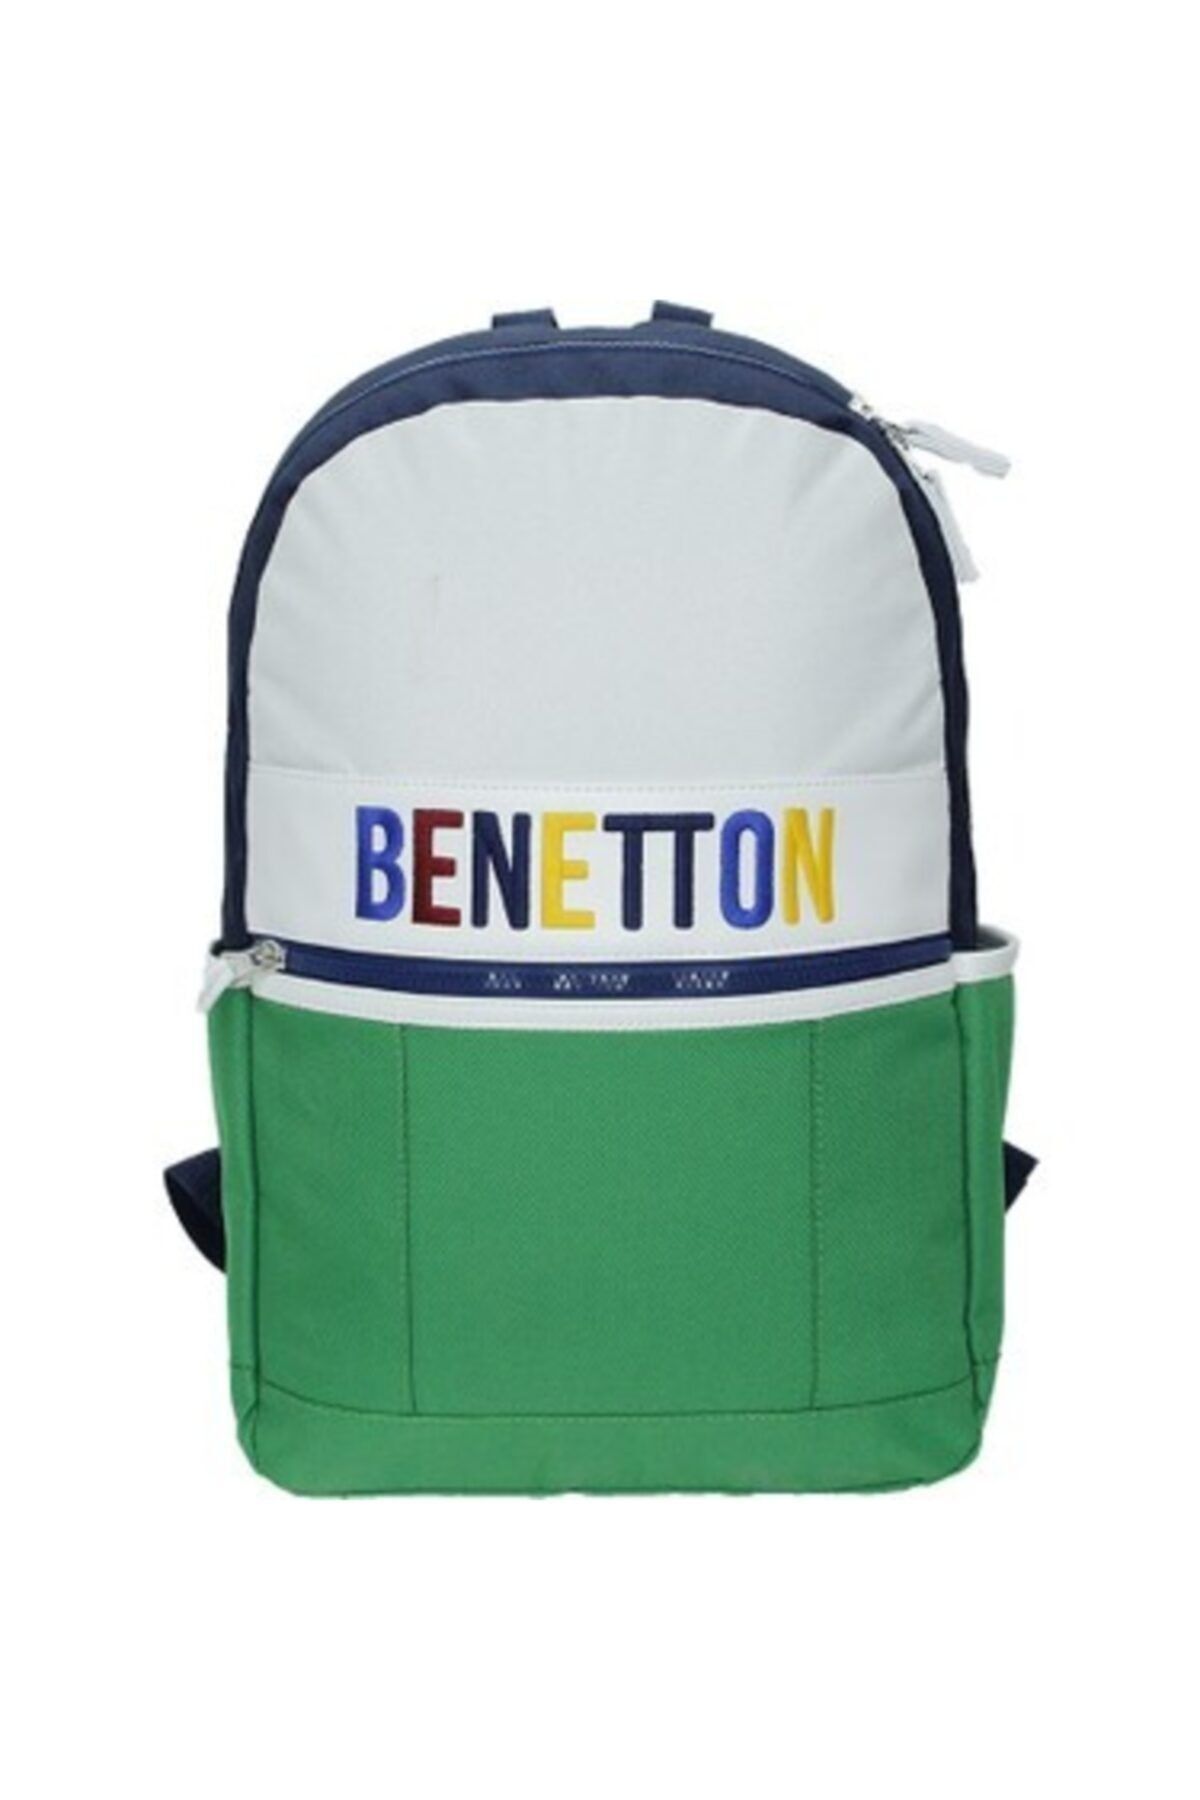 Benetton Sırt Çantası (70068)